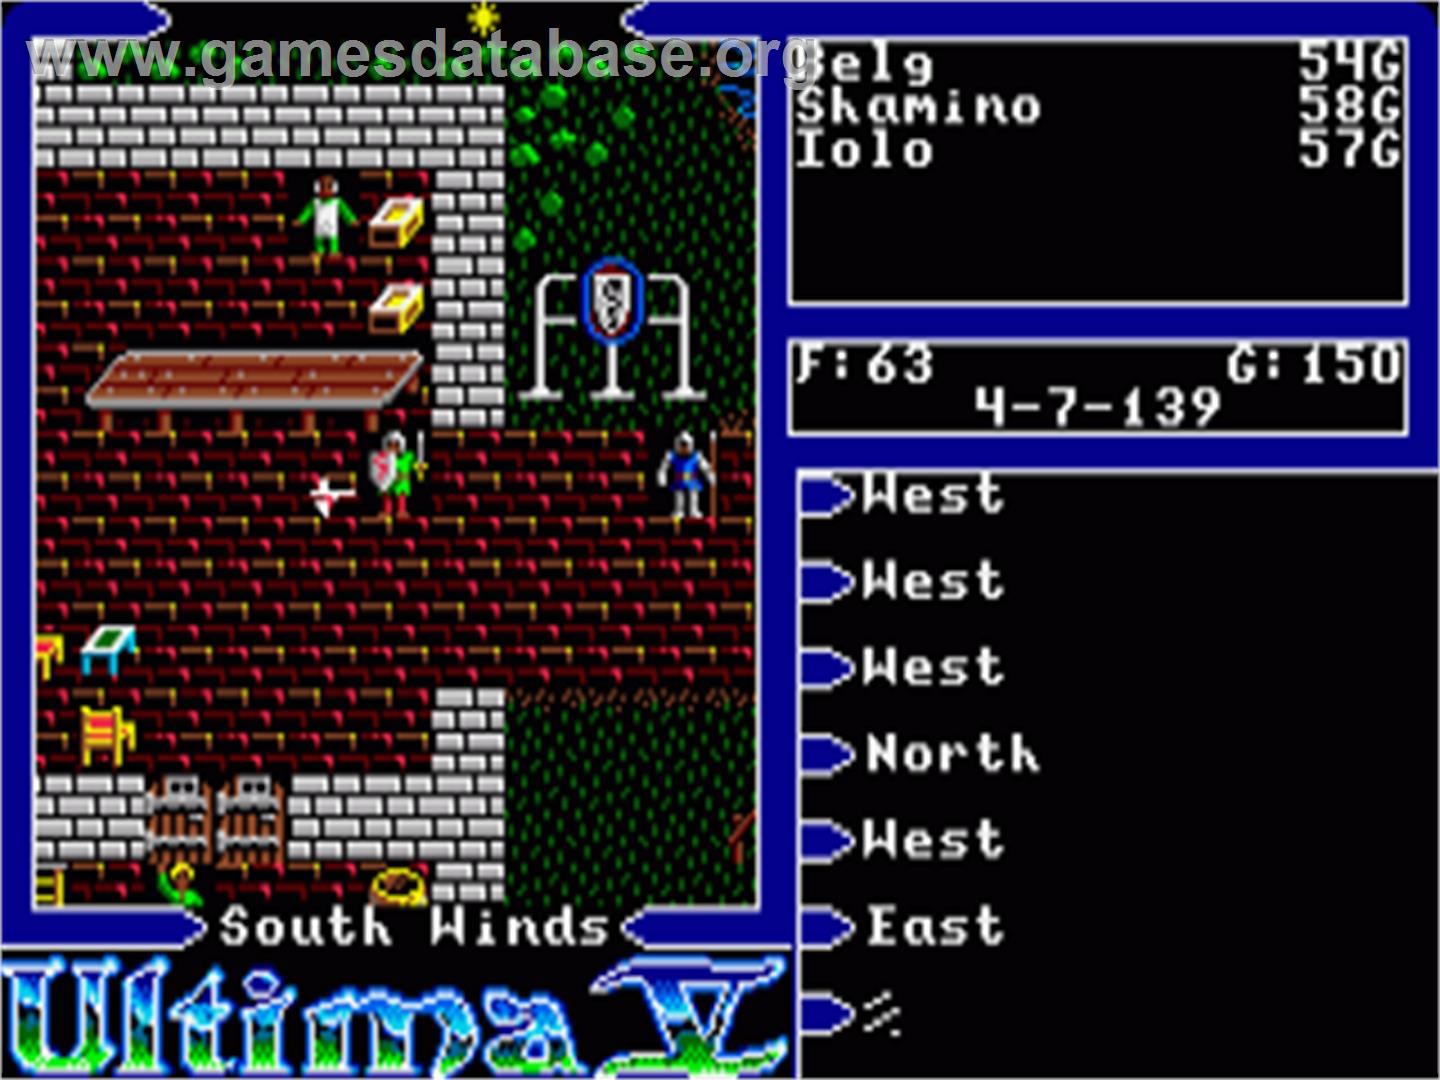 Ultima V: Warriors of Destiny - Commodore Amiga - Artwork - In Game